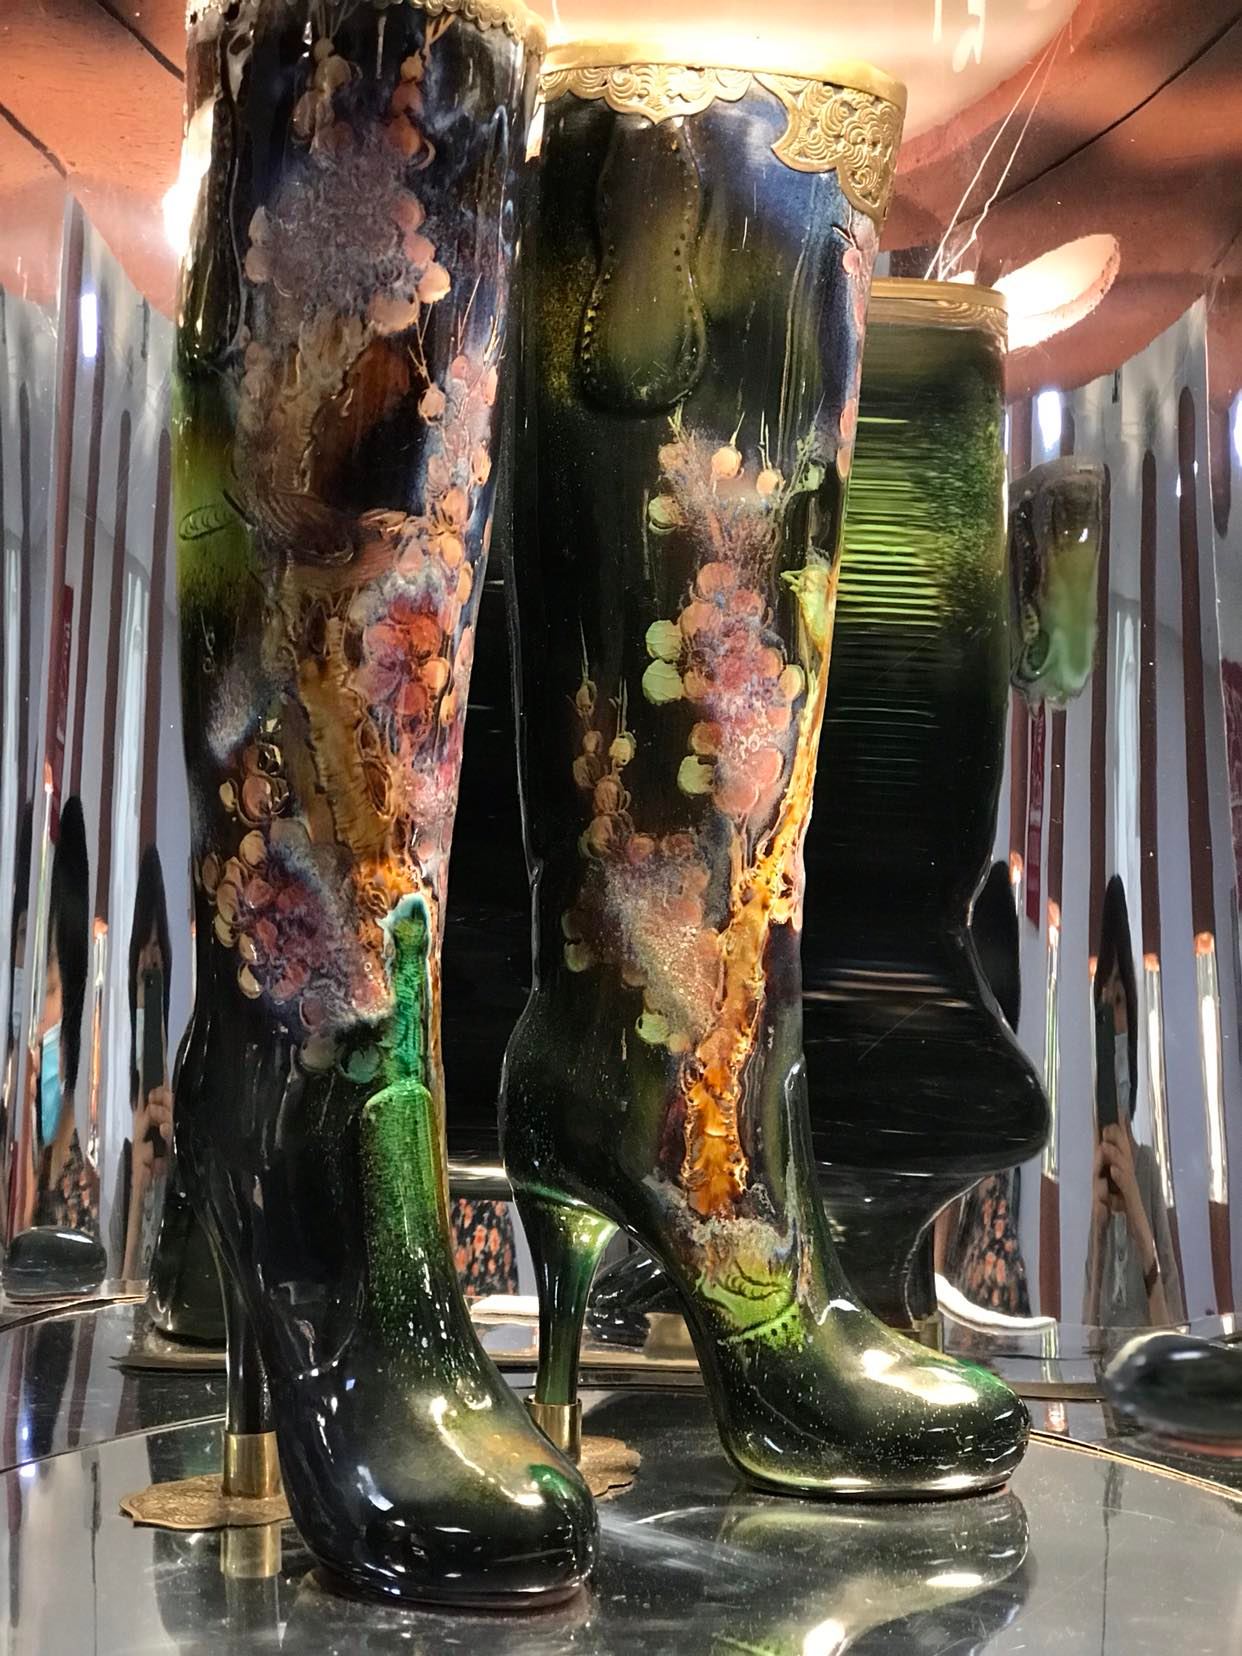 Tác phẩm thể hiện rõ nhất tài năng của người nghệ nhân dân gian. Màu sắc ẩn hiện lớp lớp biến ảo mà vẫn giữ được độ trong, họa tiết hoa đào sống động tươi tắn như một khu vườn xuân. Đây là tác phẩm được tổ chức kỷ lục Guiness Việt Nam cấp bằng công nhận là chiếc giày gốm lớn nhất ca rnuwowcs (2013)